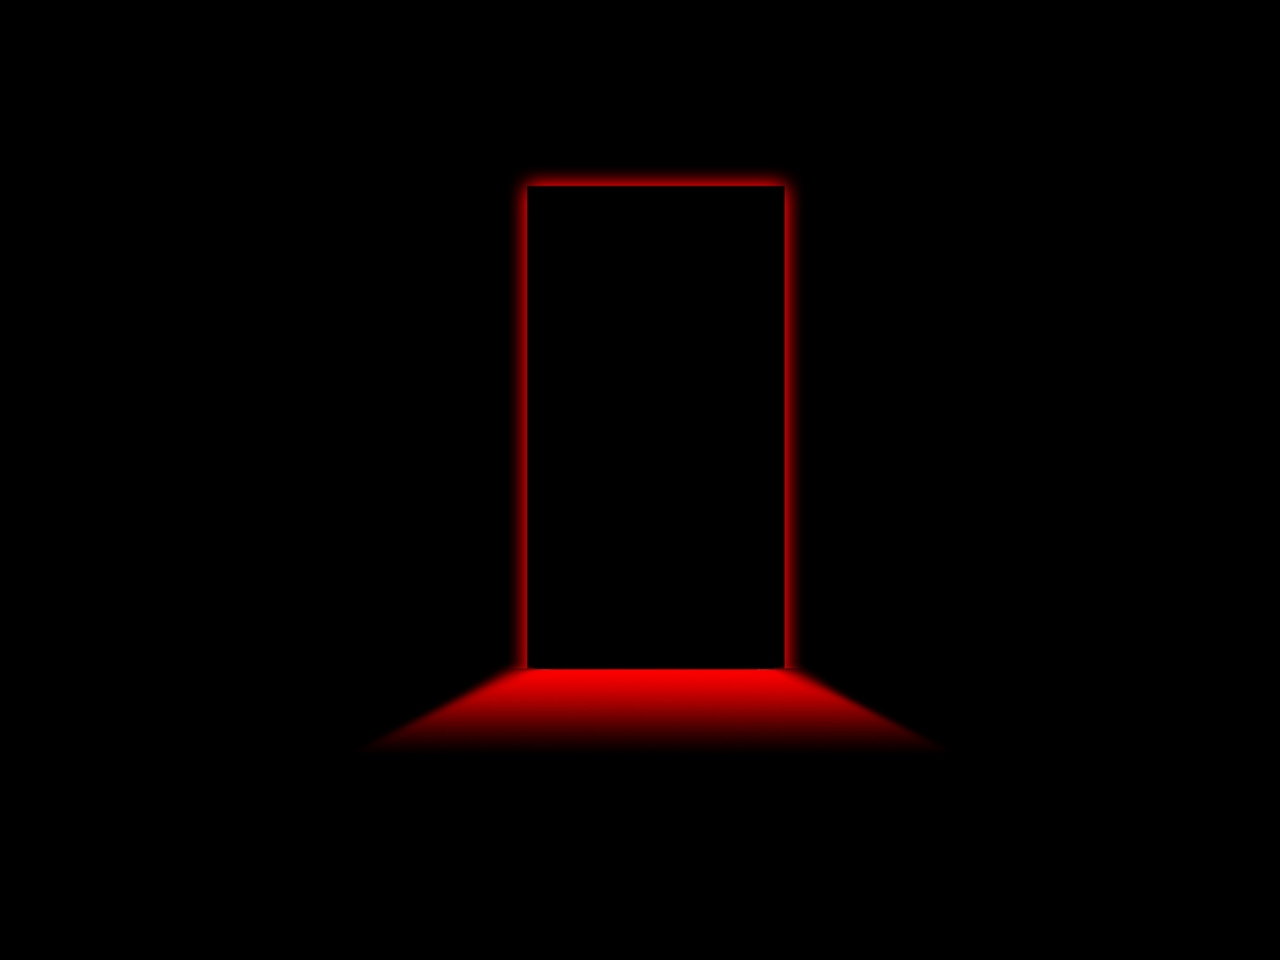 Door Red Light for 1280 x 960 resolution